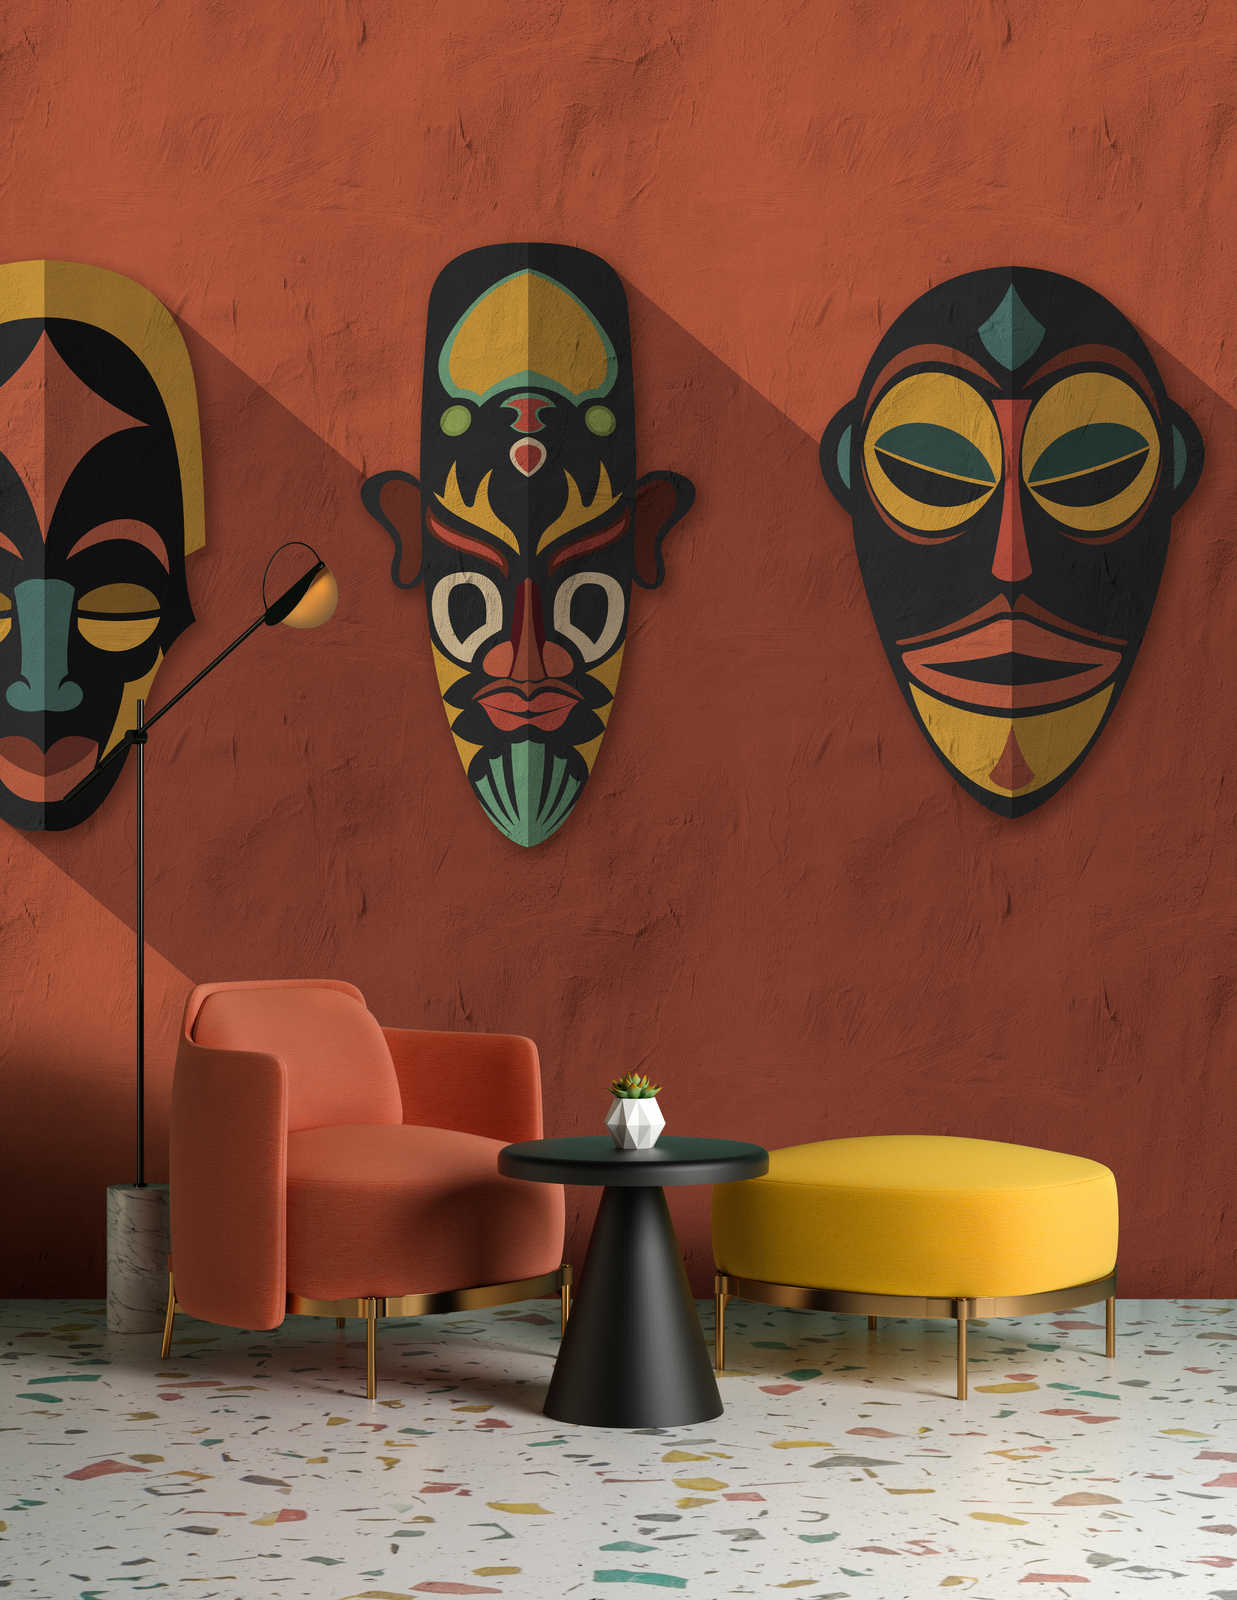             Zulu 2 – Fototapete Terrakotta Orange, Afrika Masken Zulu Design
        